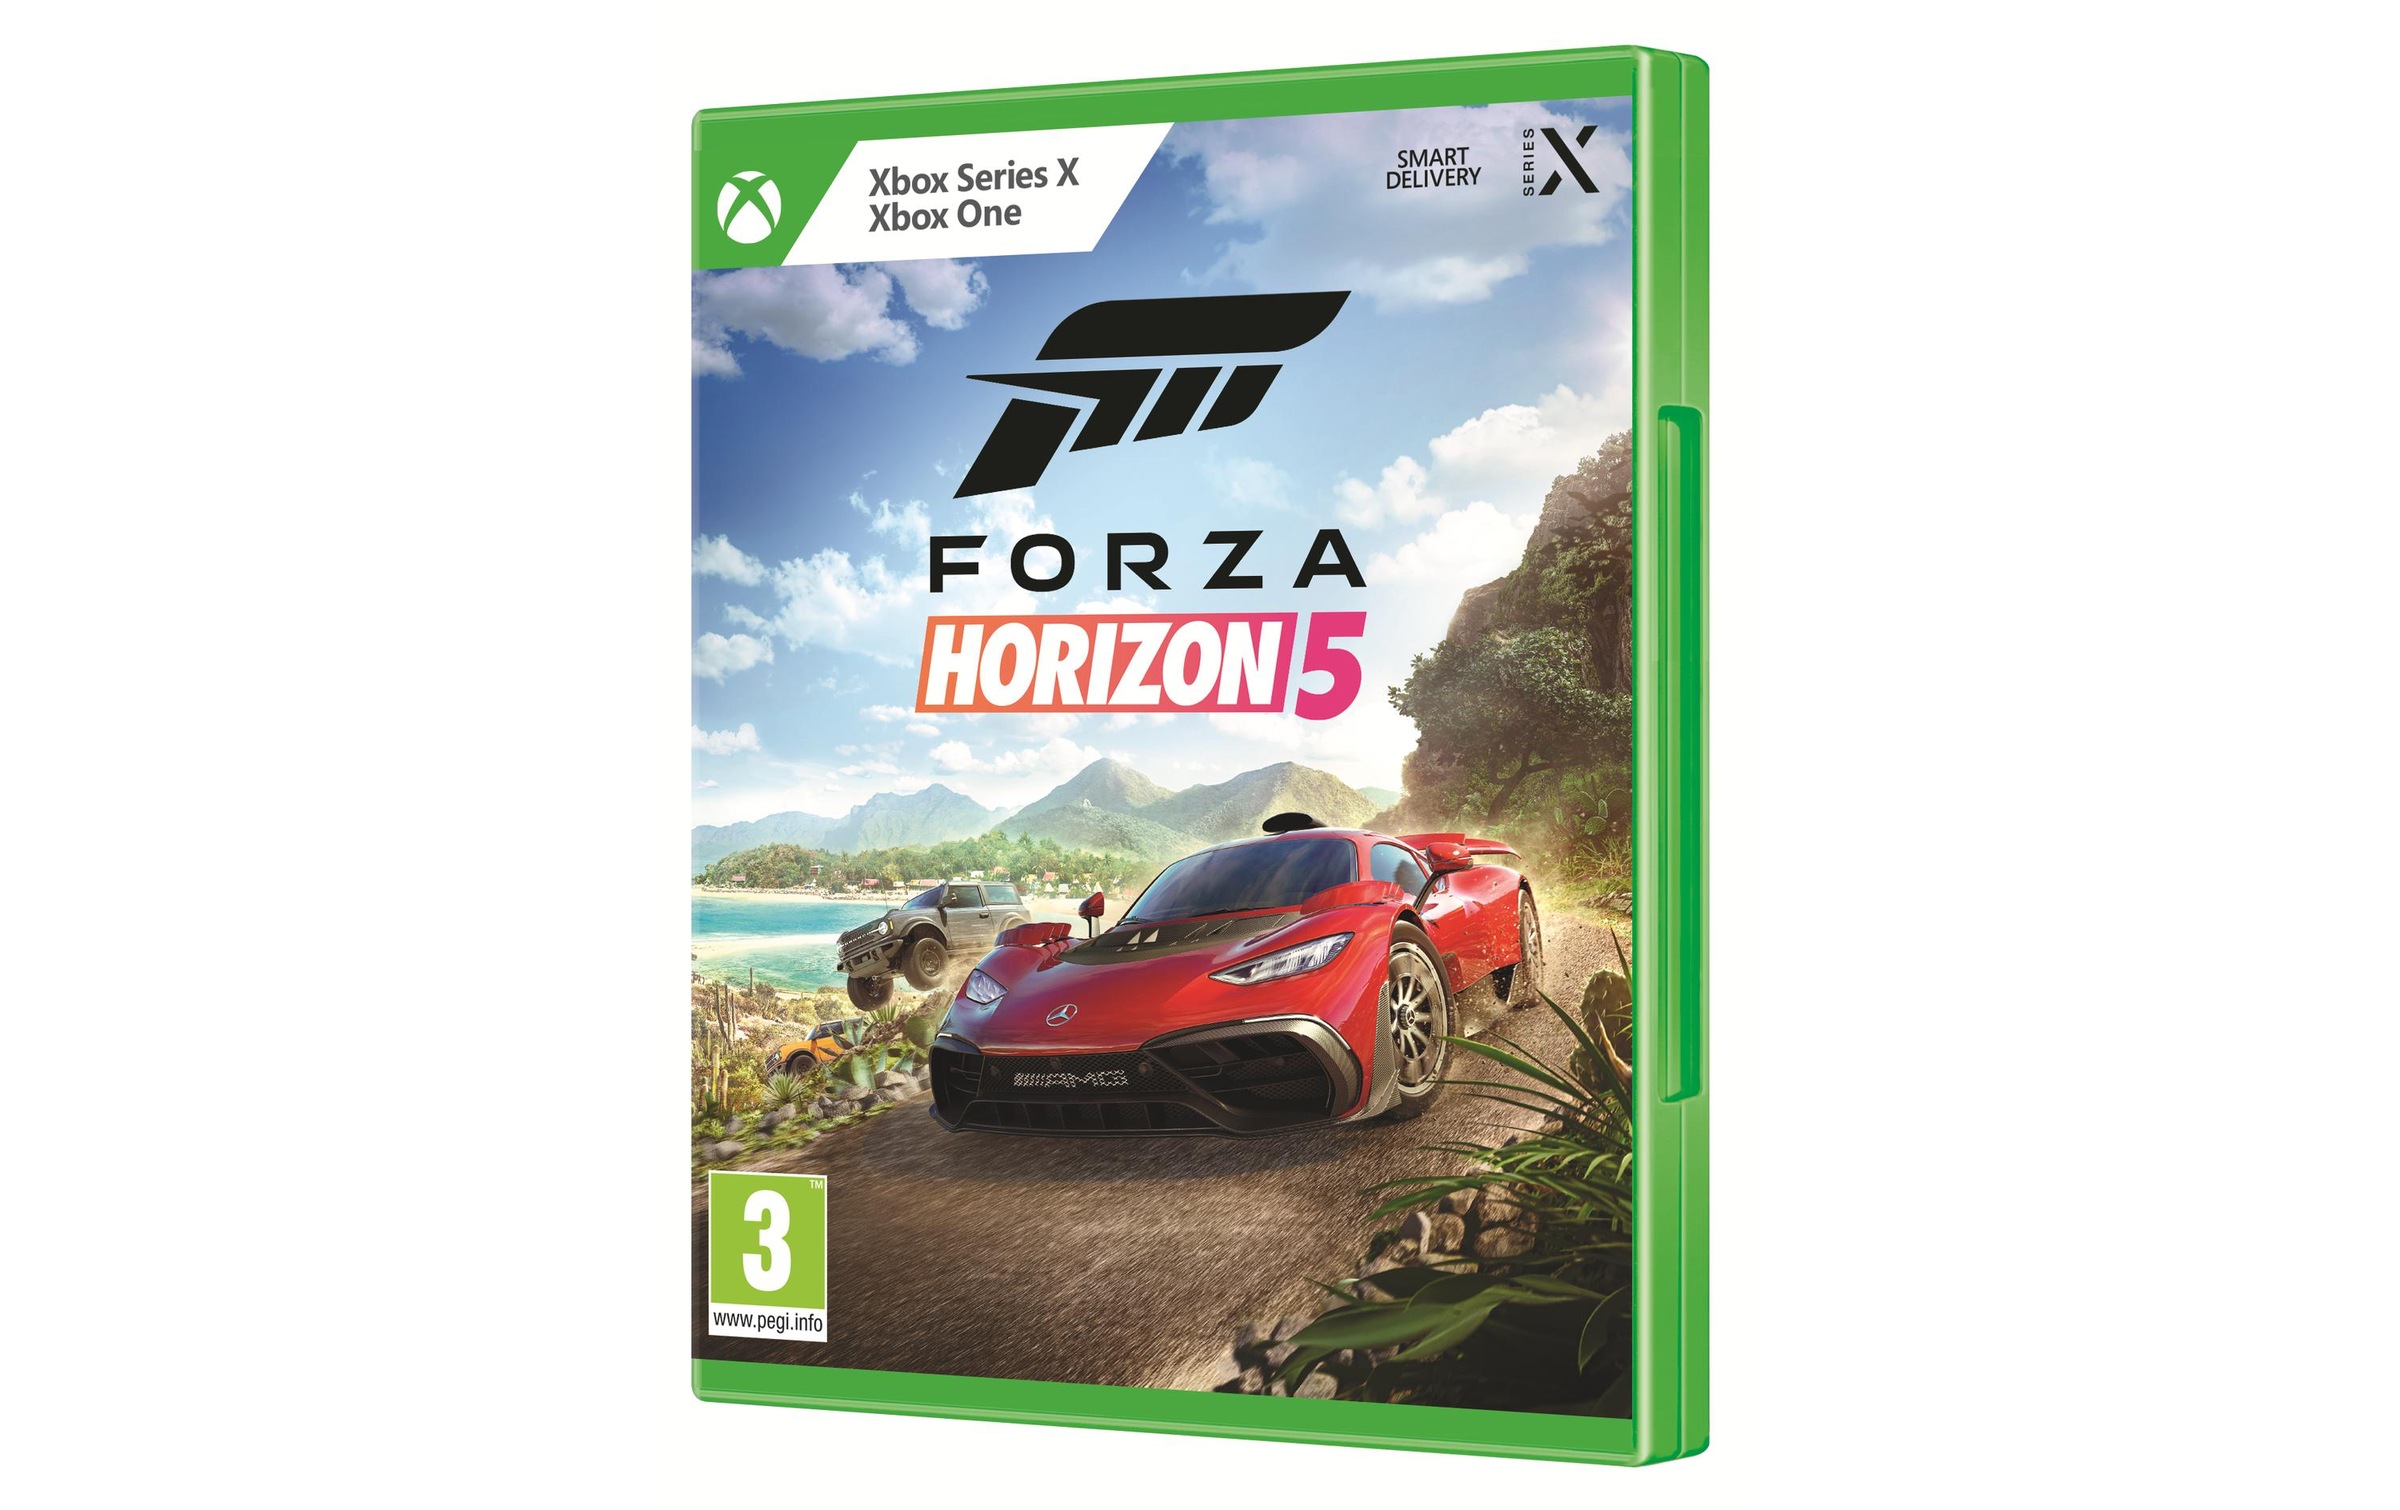 Microsoft Spielesoftware »Forza Horizon 5«, Xbox Series X